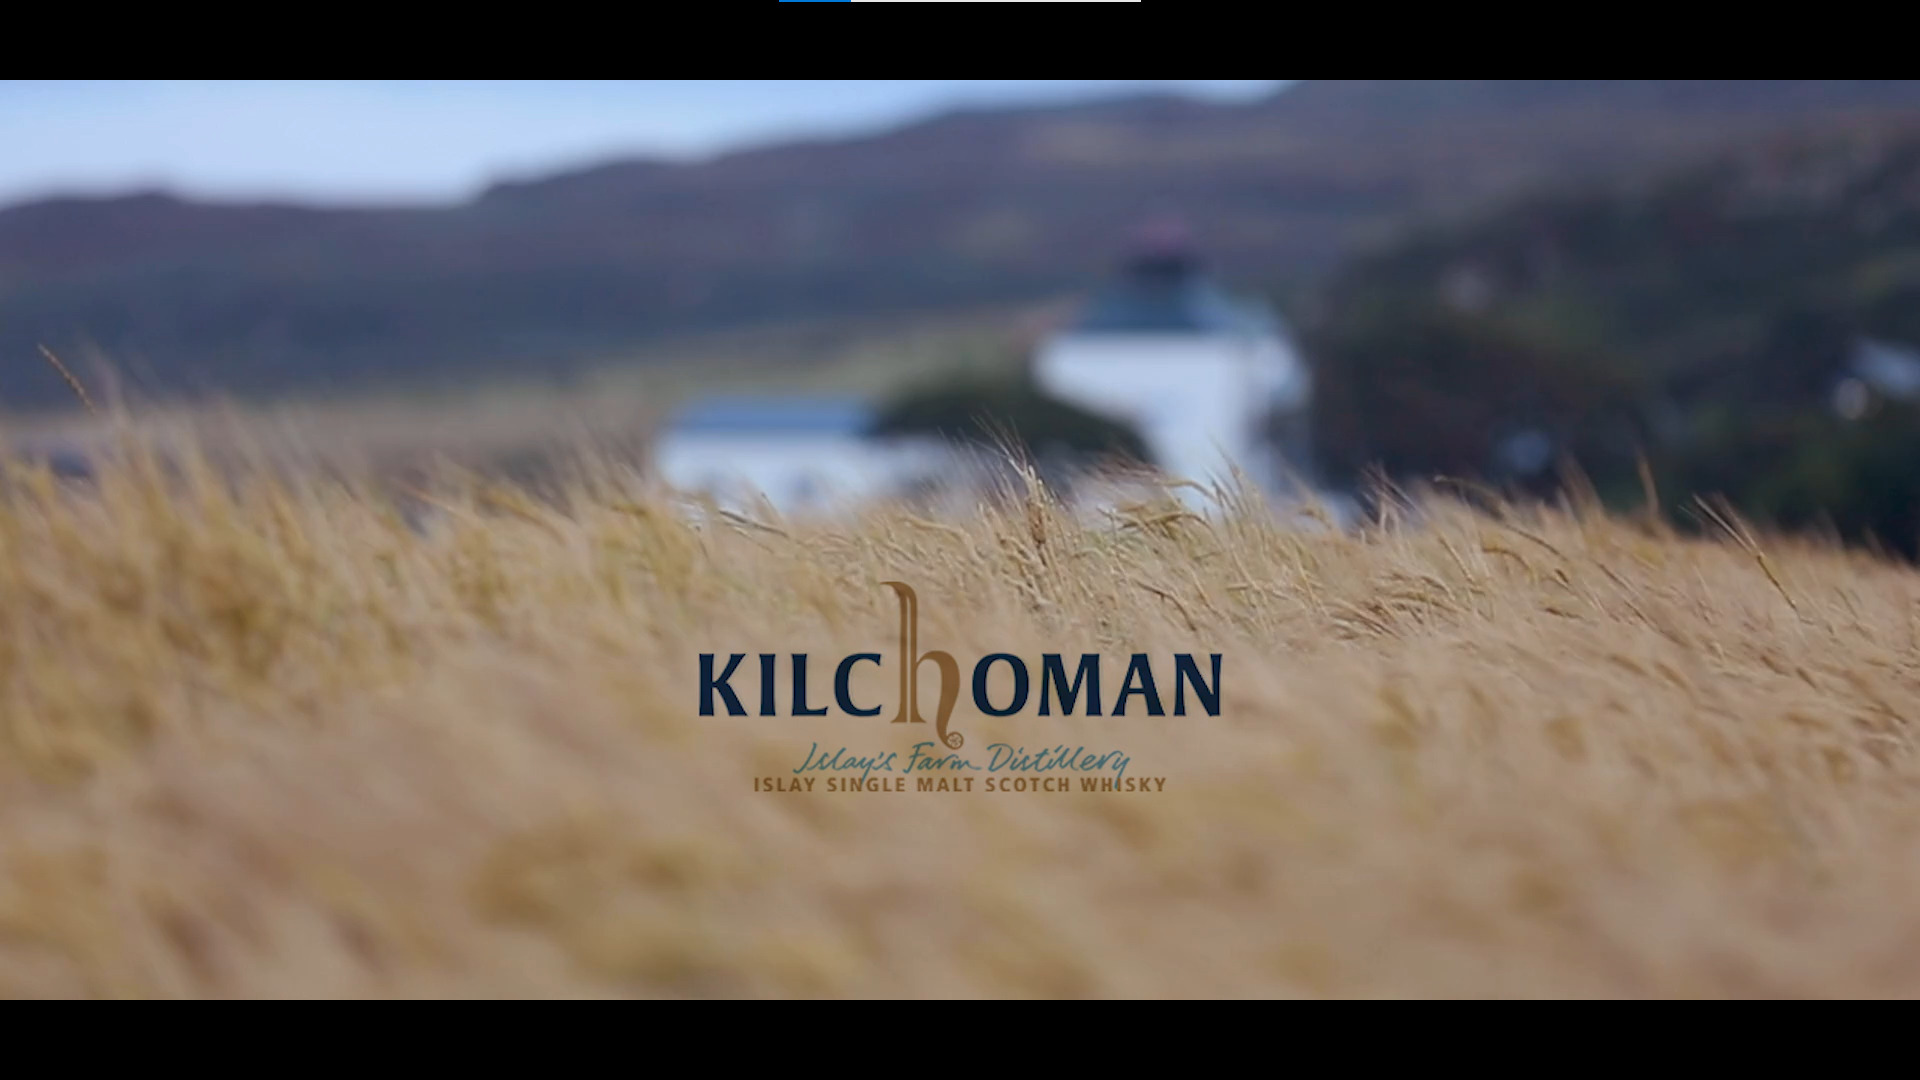 A Tour of Kilchoman